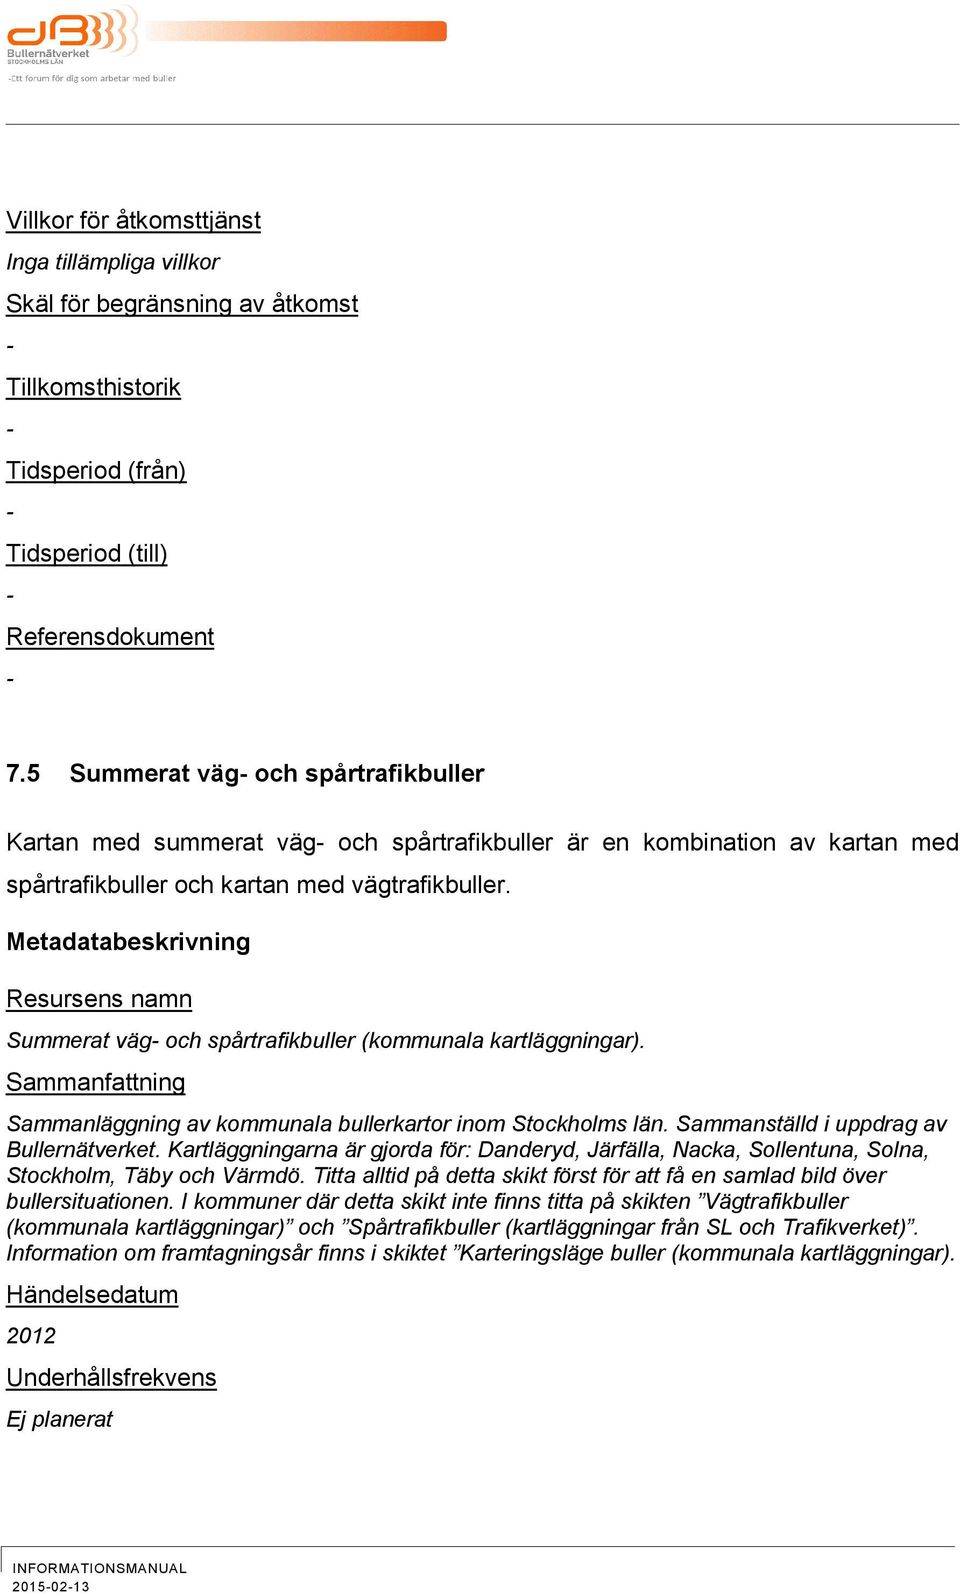 Metadatabeskrivning Resursens namn Summerat väg och spårtrafikbuller (kommunala kartläggningar). Sammanfattning Sammanläggning av kommunala bullerkartor inom Stockholms län.